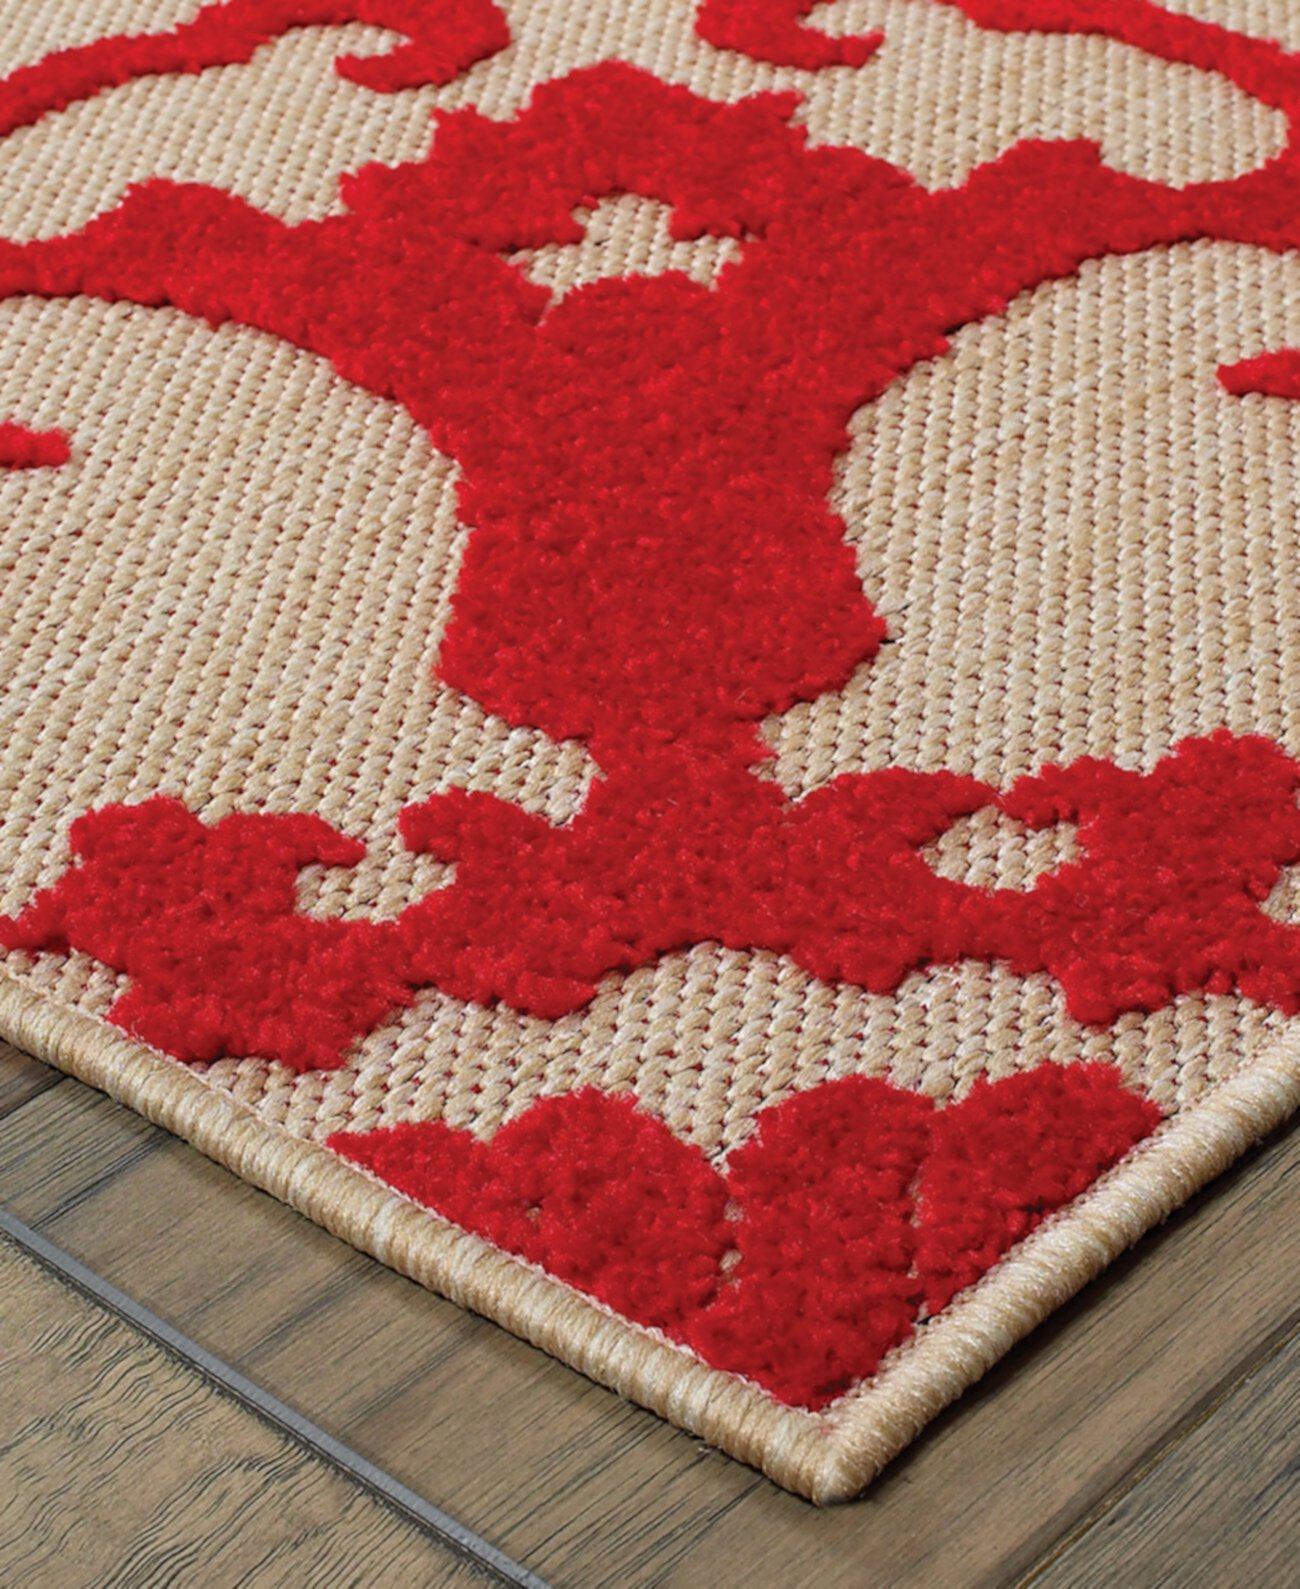 Cayman 097R9 Песочный/красный коврик размером 6 футов 7 x 9 футов 6 дюймов для внутреннего/наружного использования Oriental Weavers